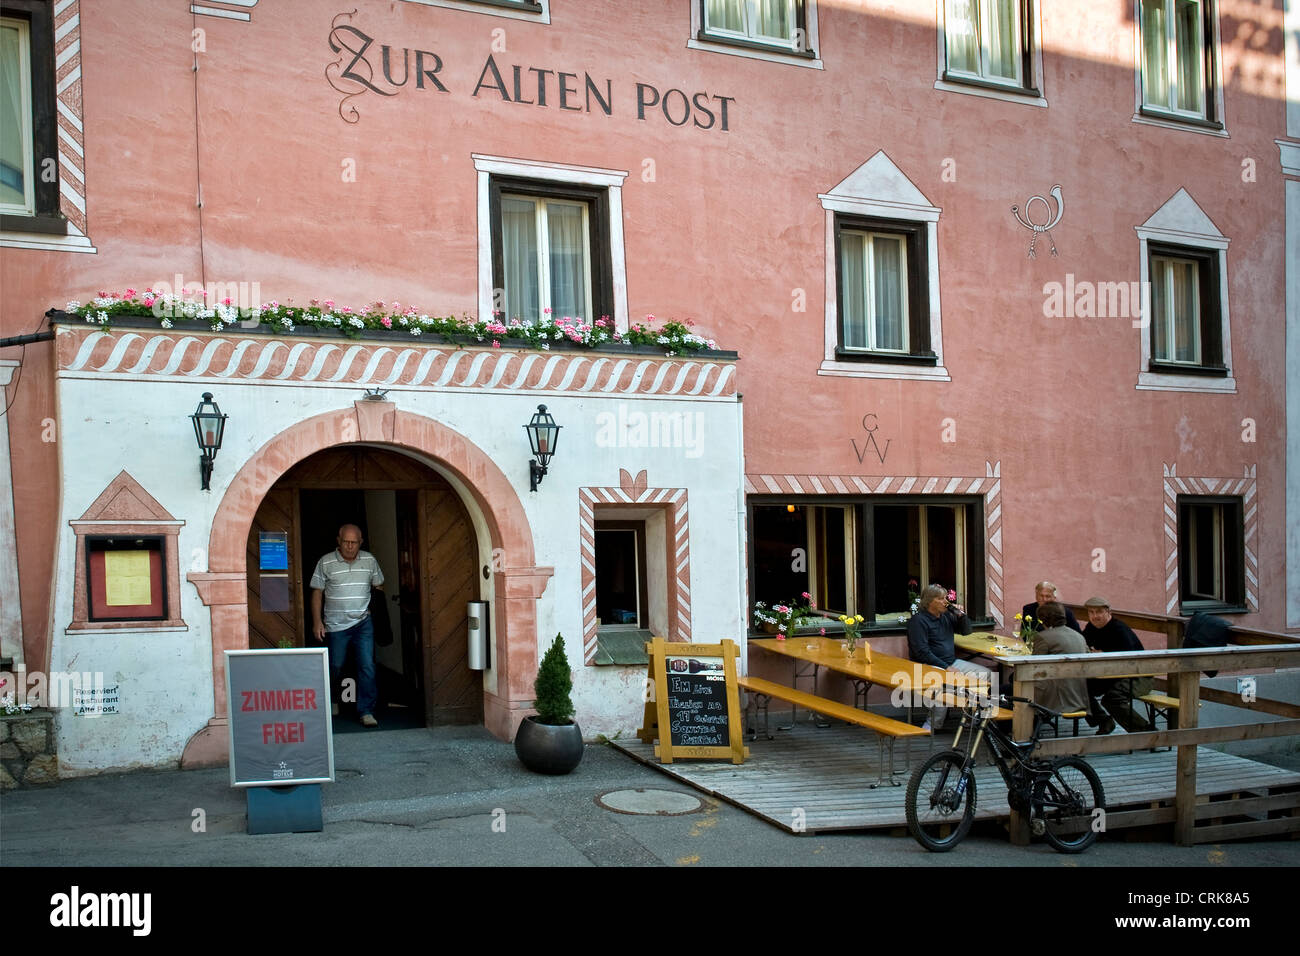 Switzerland, Canton Grisons, Davos, Zur Alten Post restaurant Stock Photo